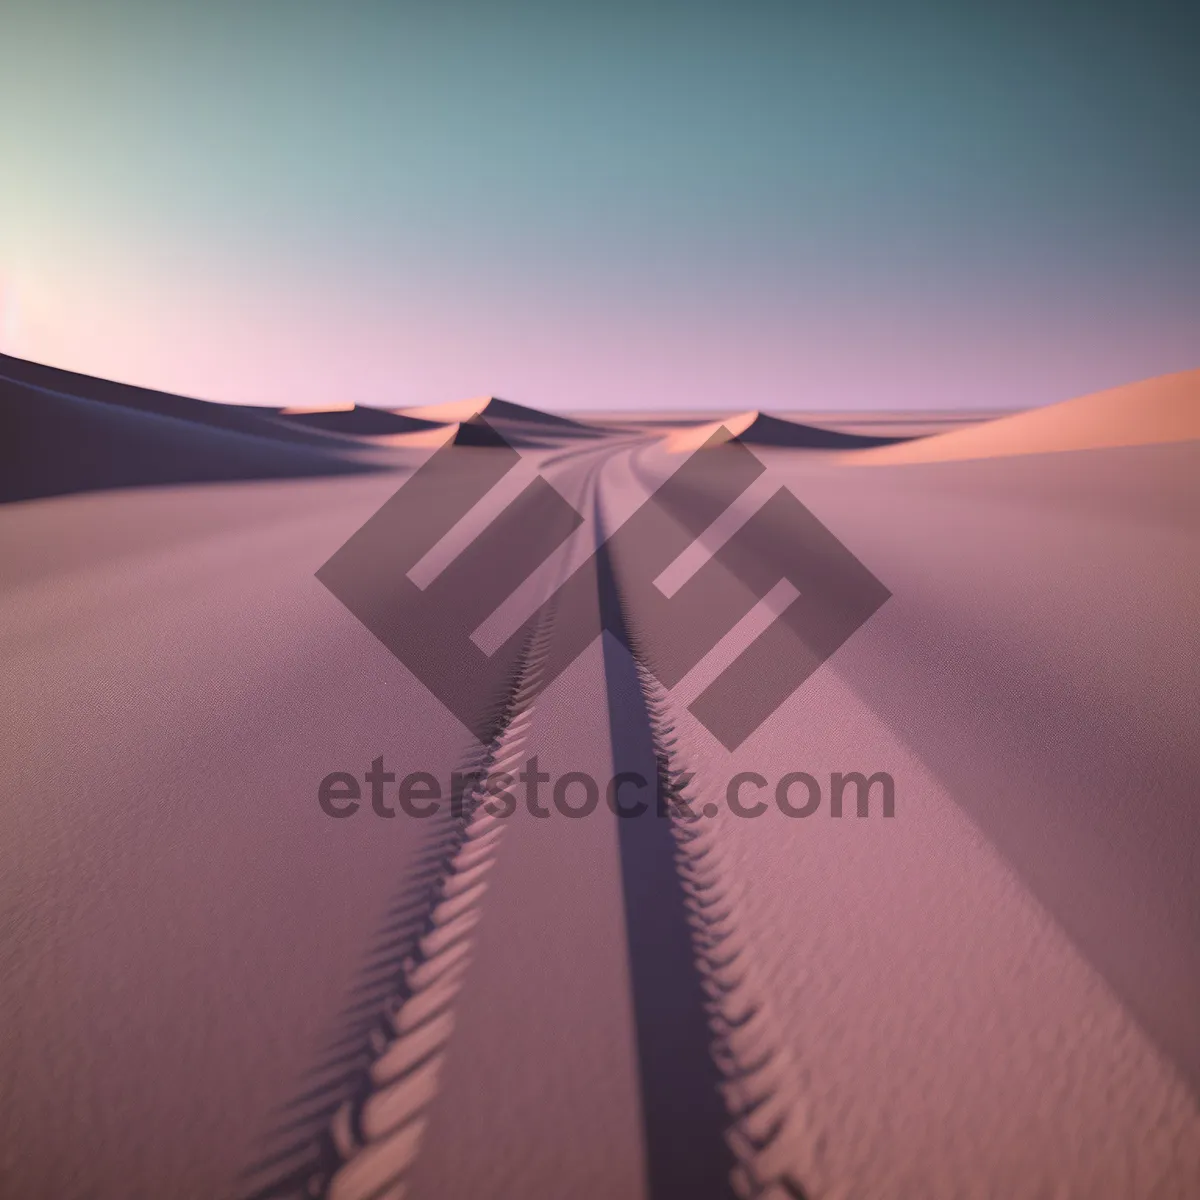 Picture of Vibrant Desert Road: Motion-filled Asphalt Landscape